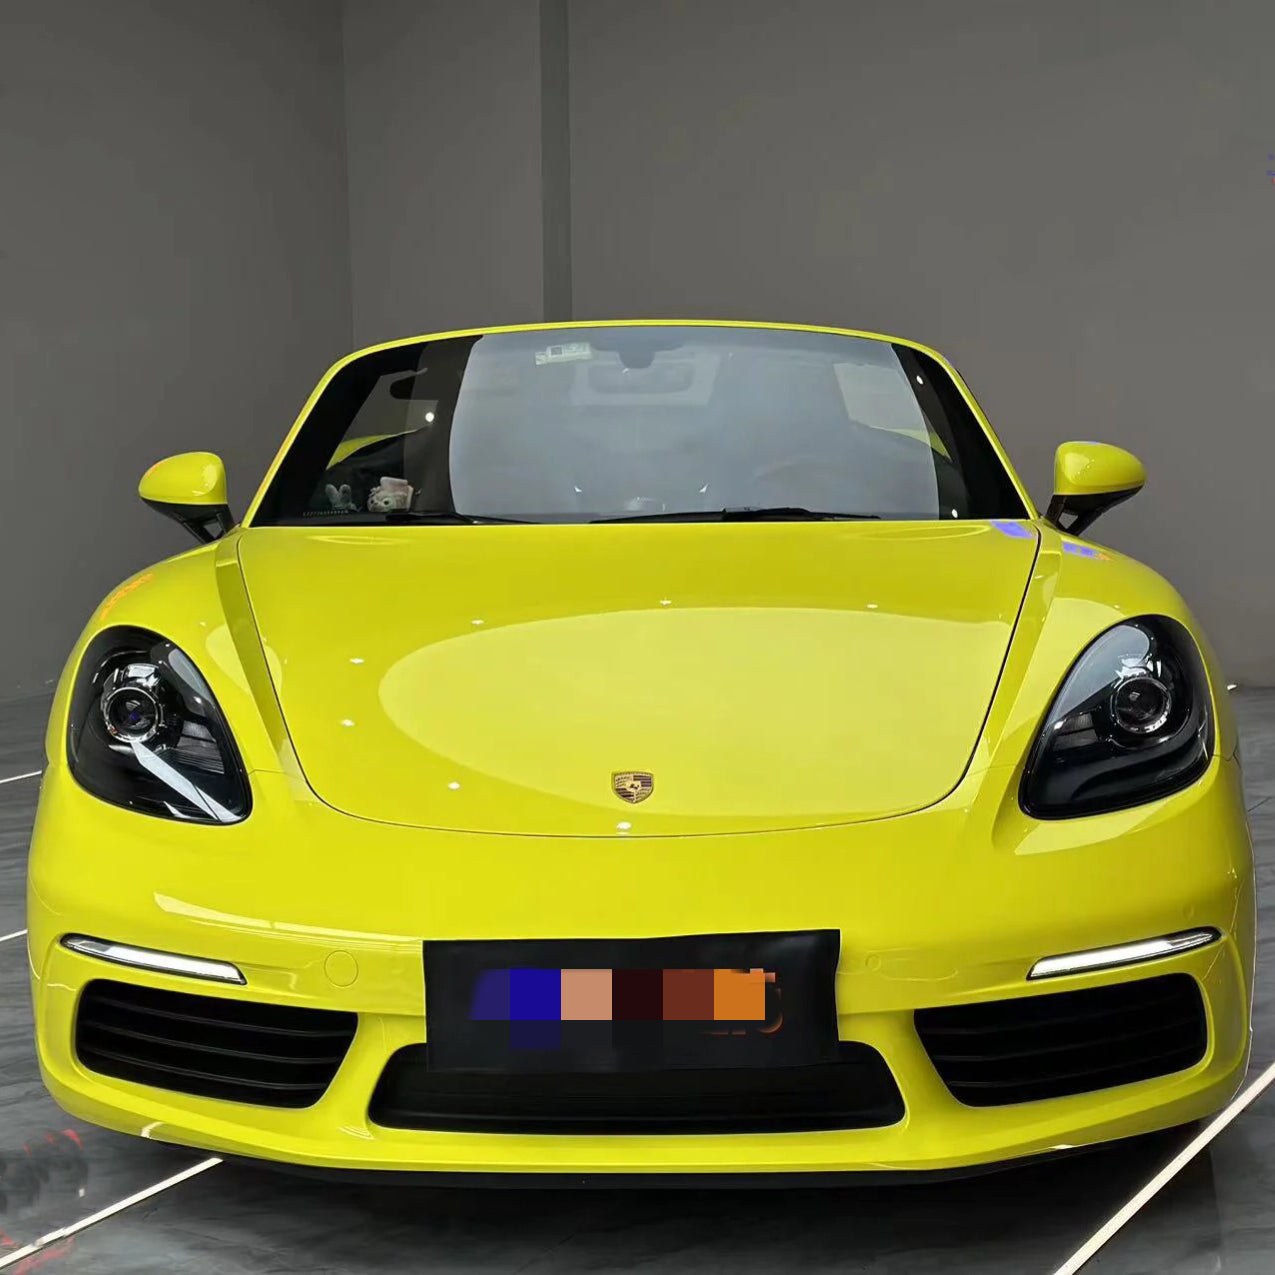 Super Gloss Lemon Yellow Car Wrap